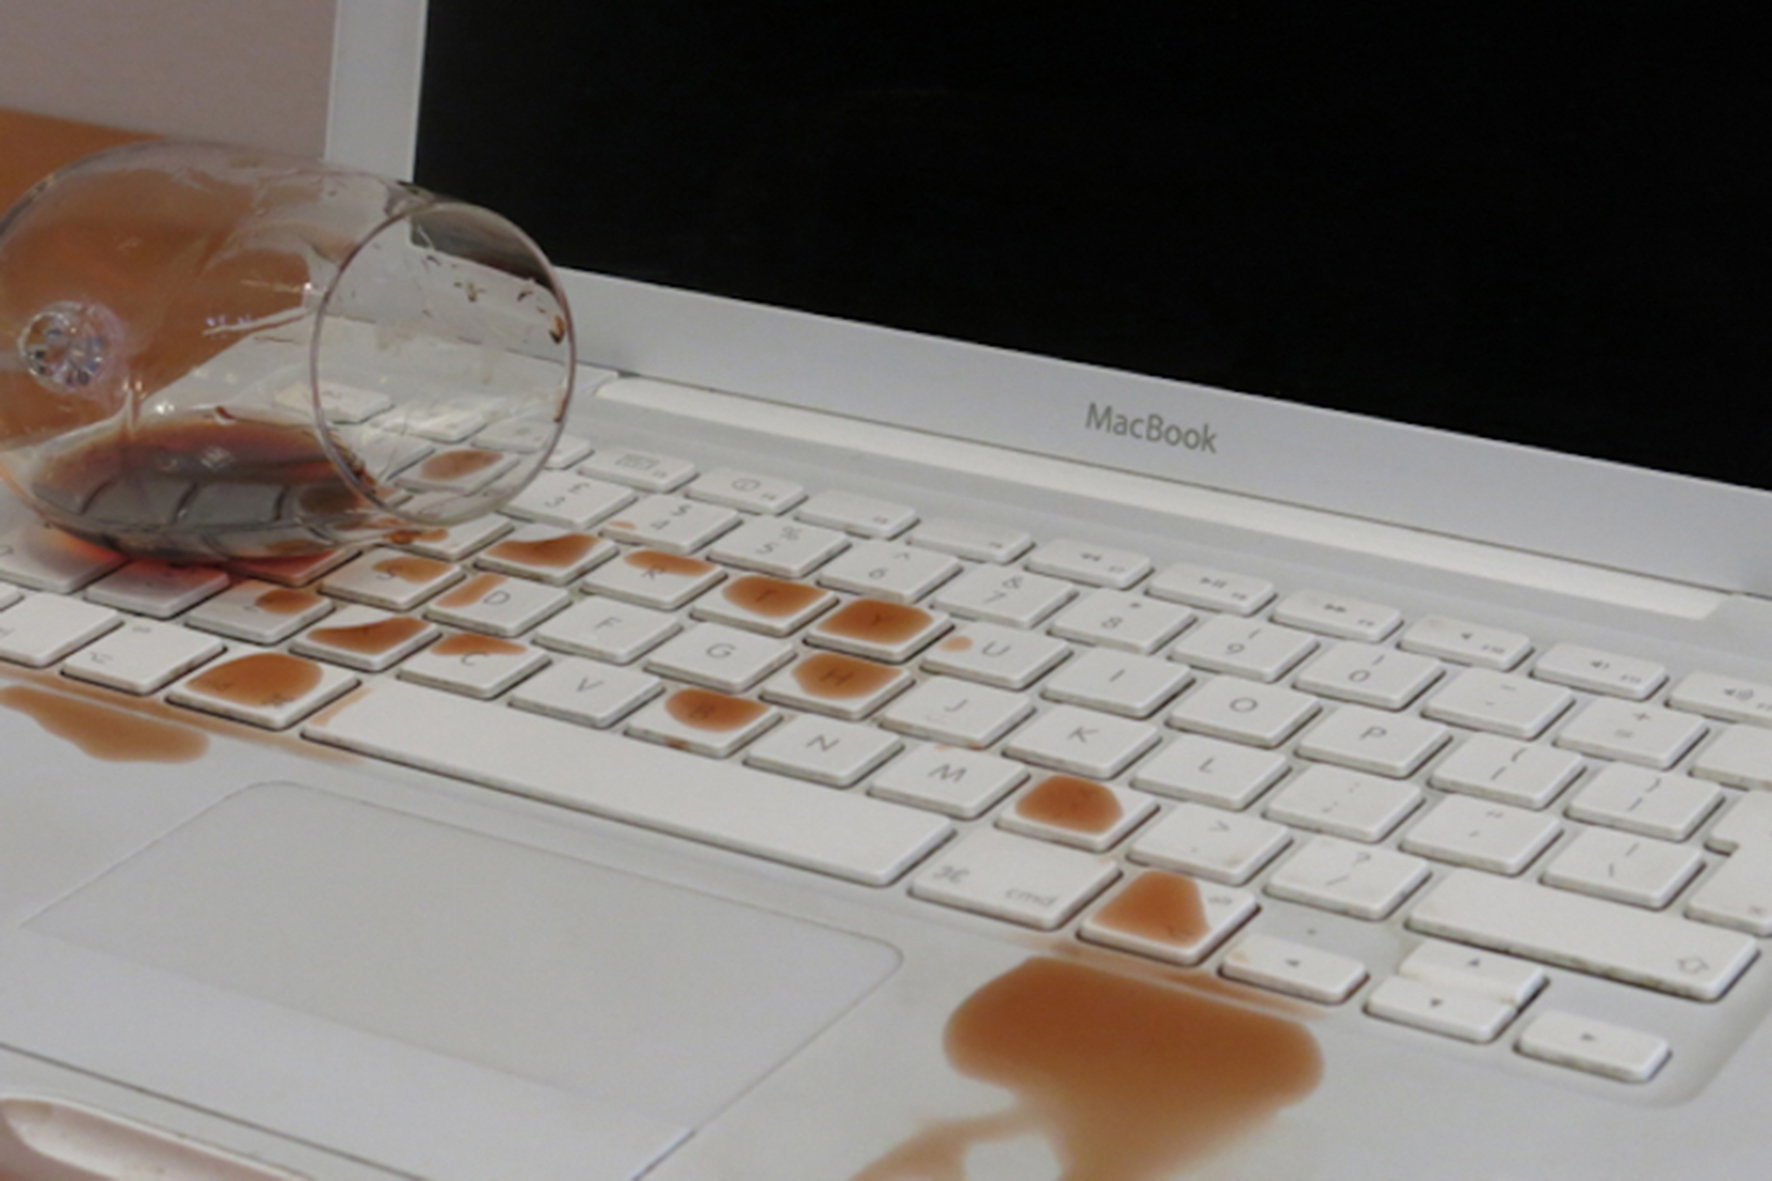 Залил клавиатуру водой. Пролили жидкость на ноутбук. Пролил на клавиатуру. Пролили воду на ноутбук. Пролитая жидкость на клавиатуру ноутбука.